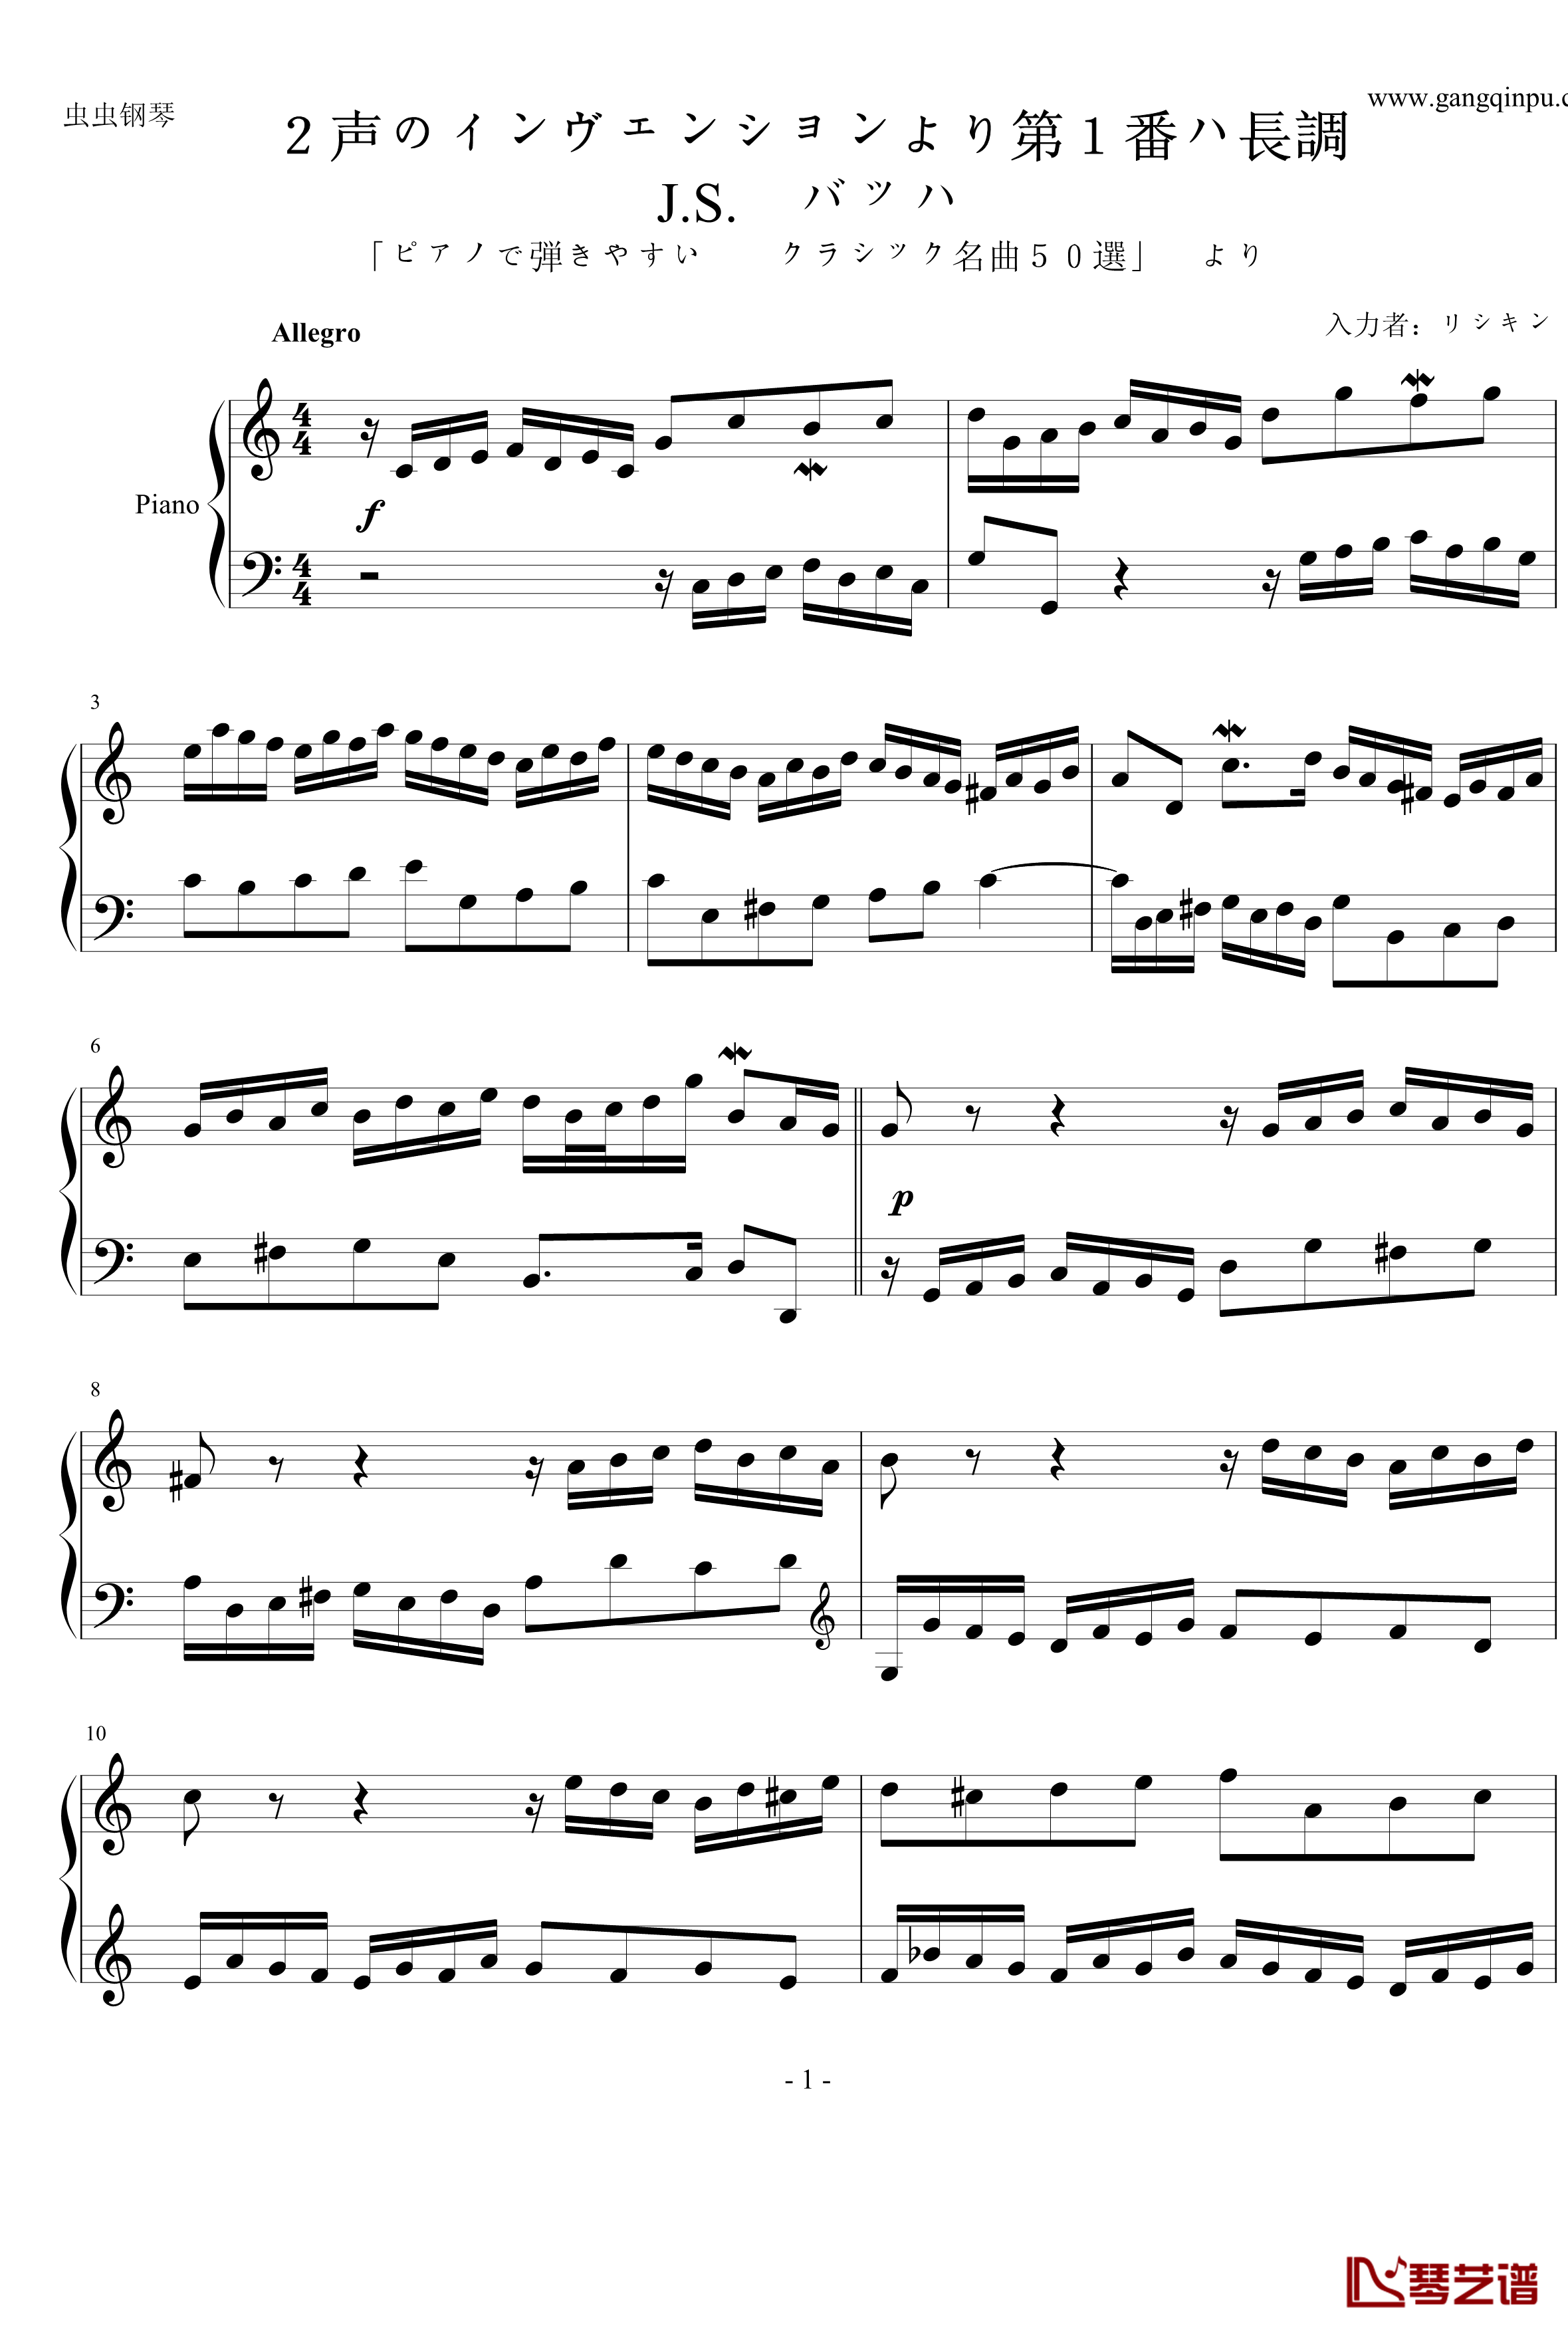 二部创意曲第一号C大调钢琴谱-巴赫-P.E.Bach1